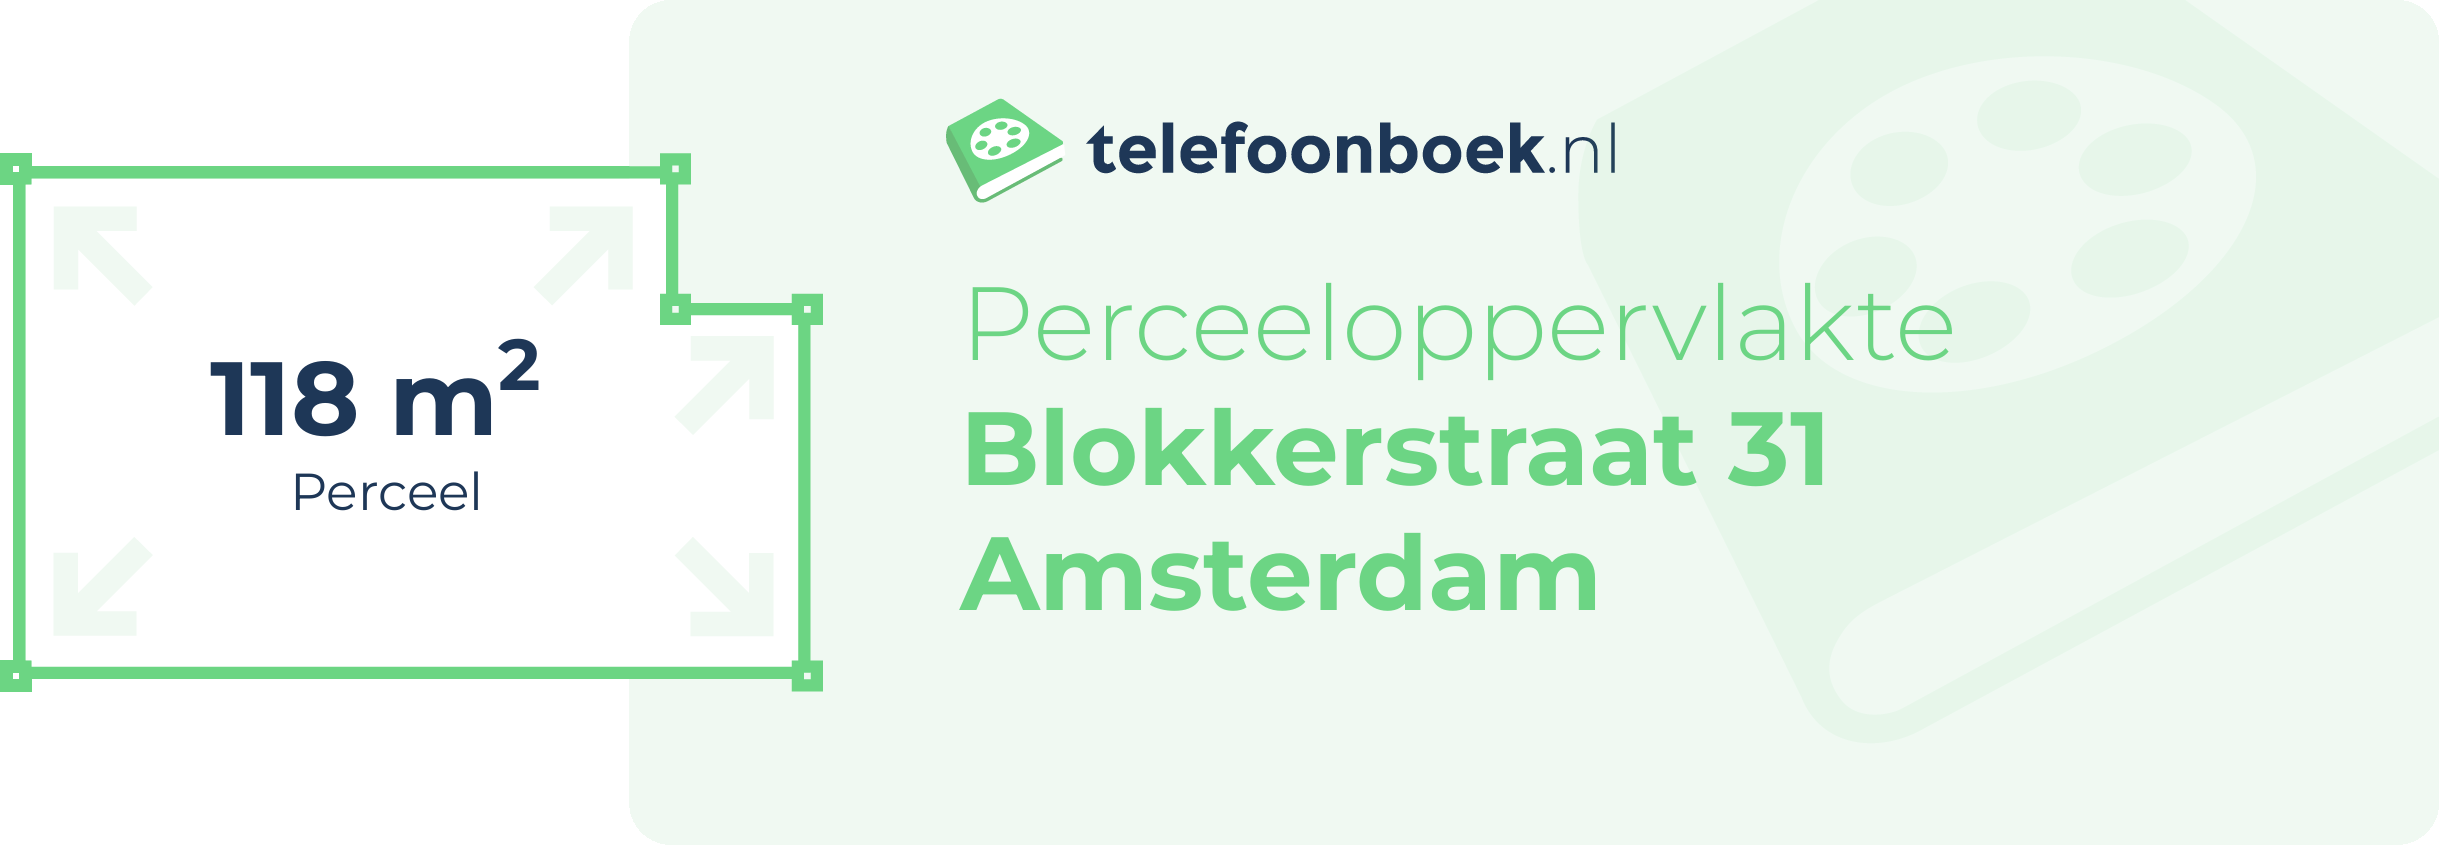 Perceeloppervlakte Blokkerstraat 31 Amsterdam